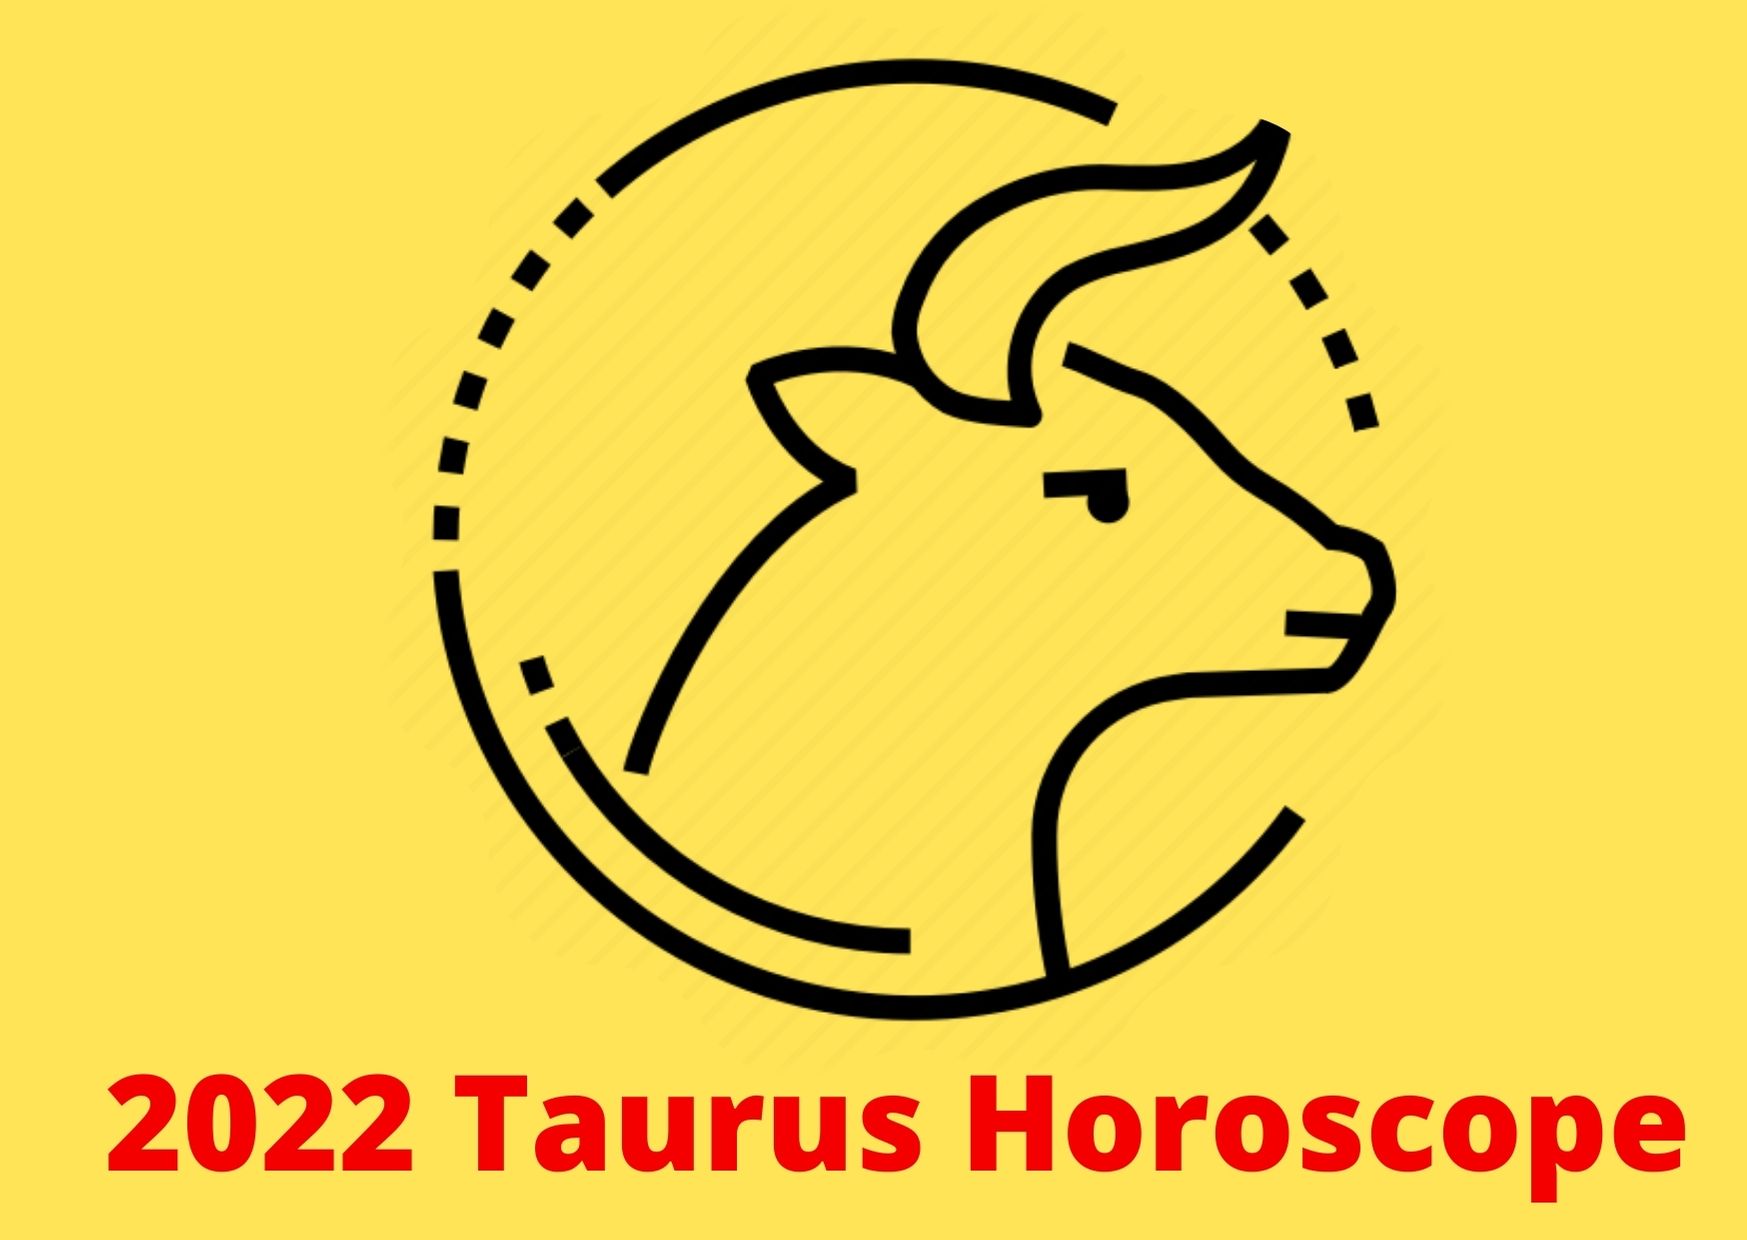 2022 Taurus Horoscope Yearly Predictions